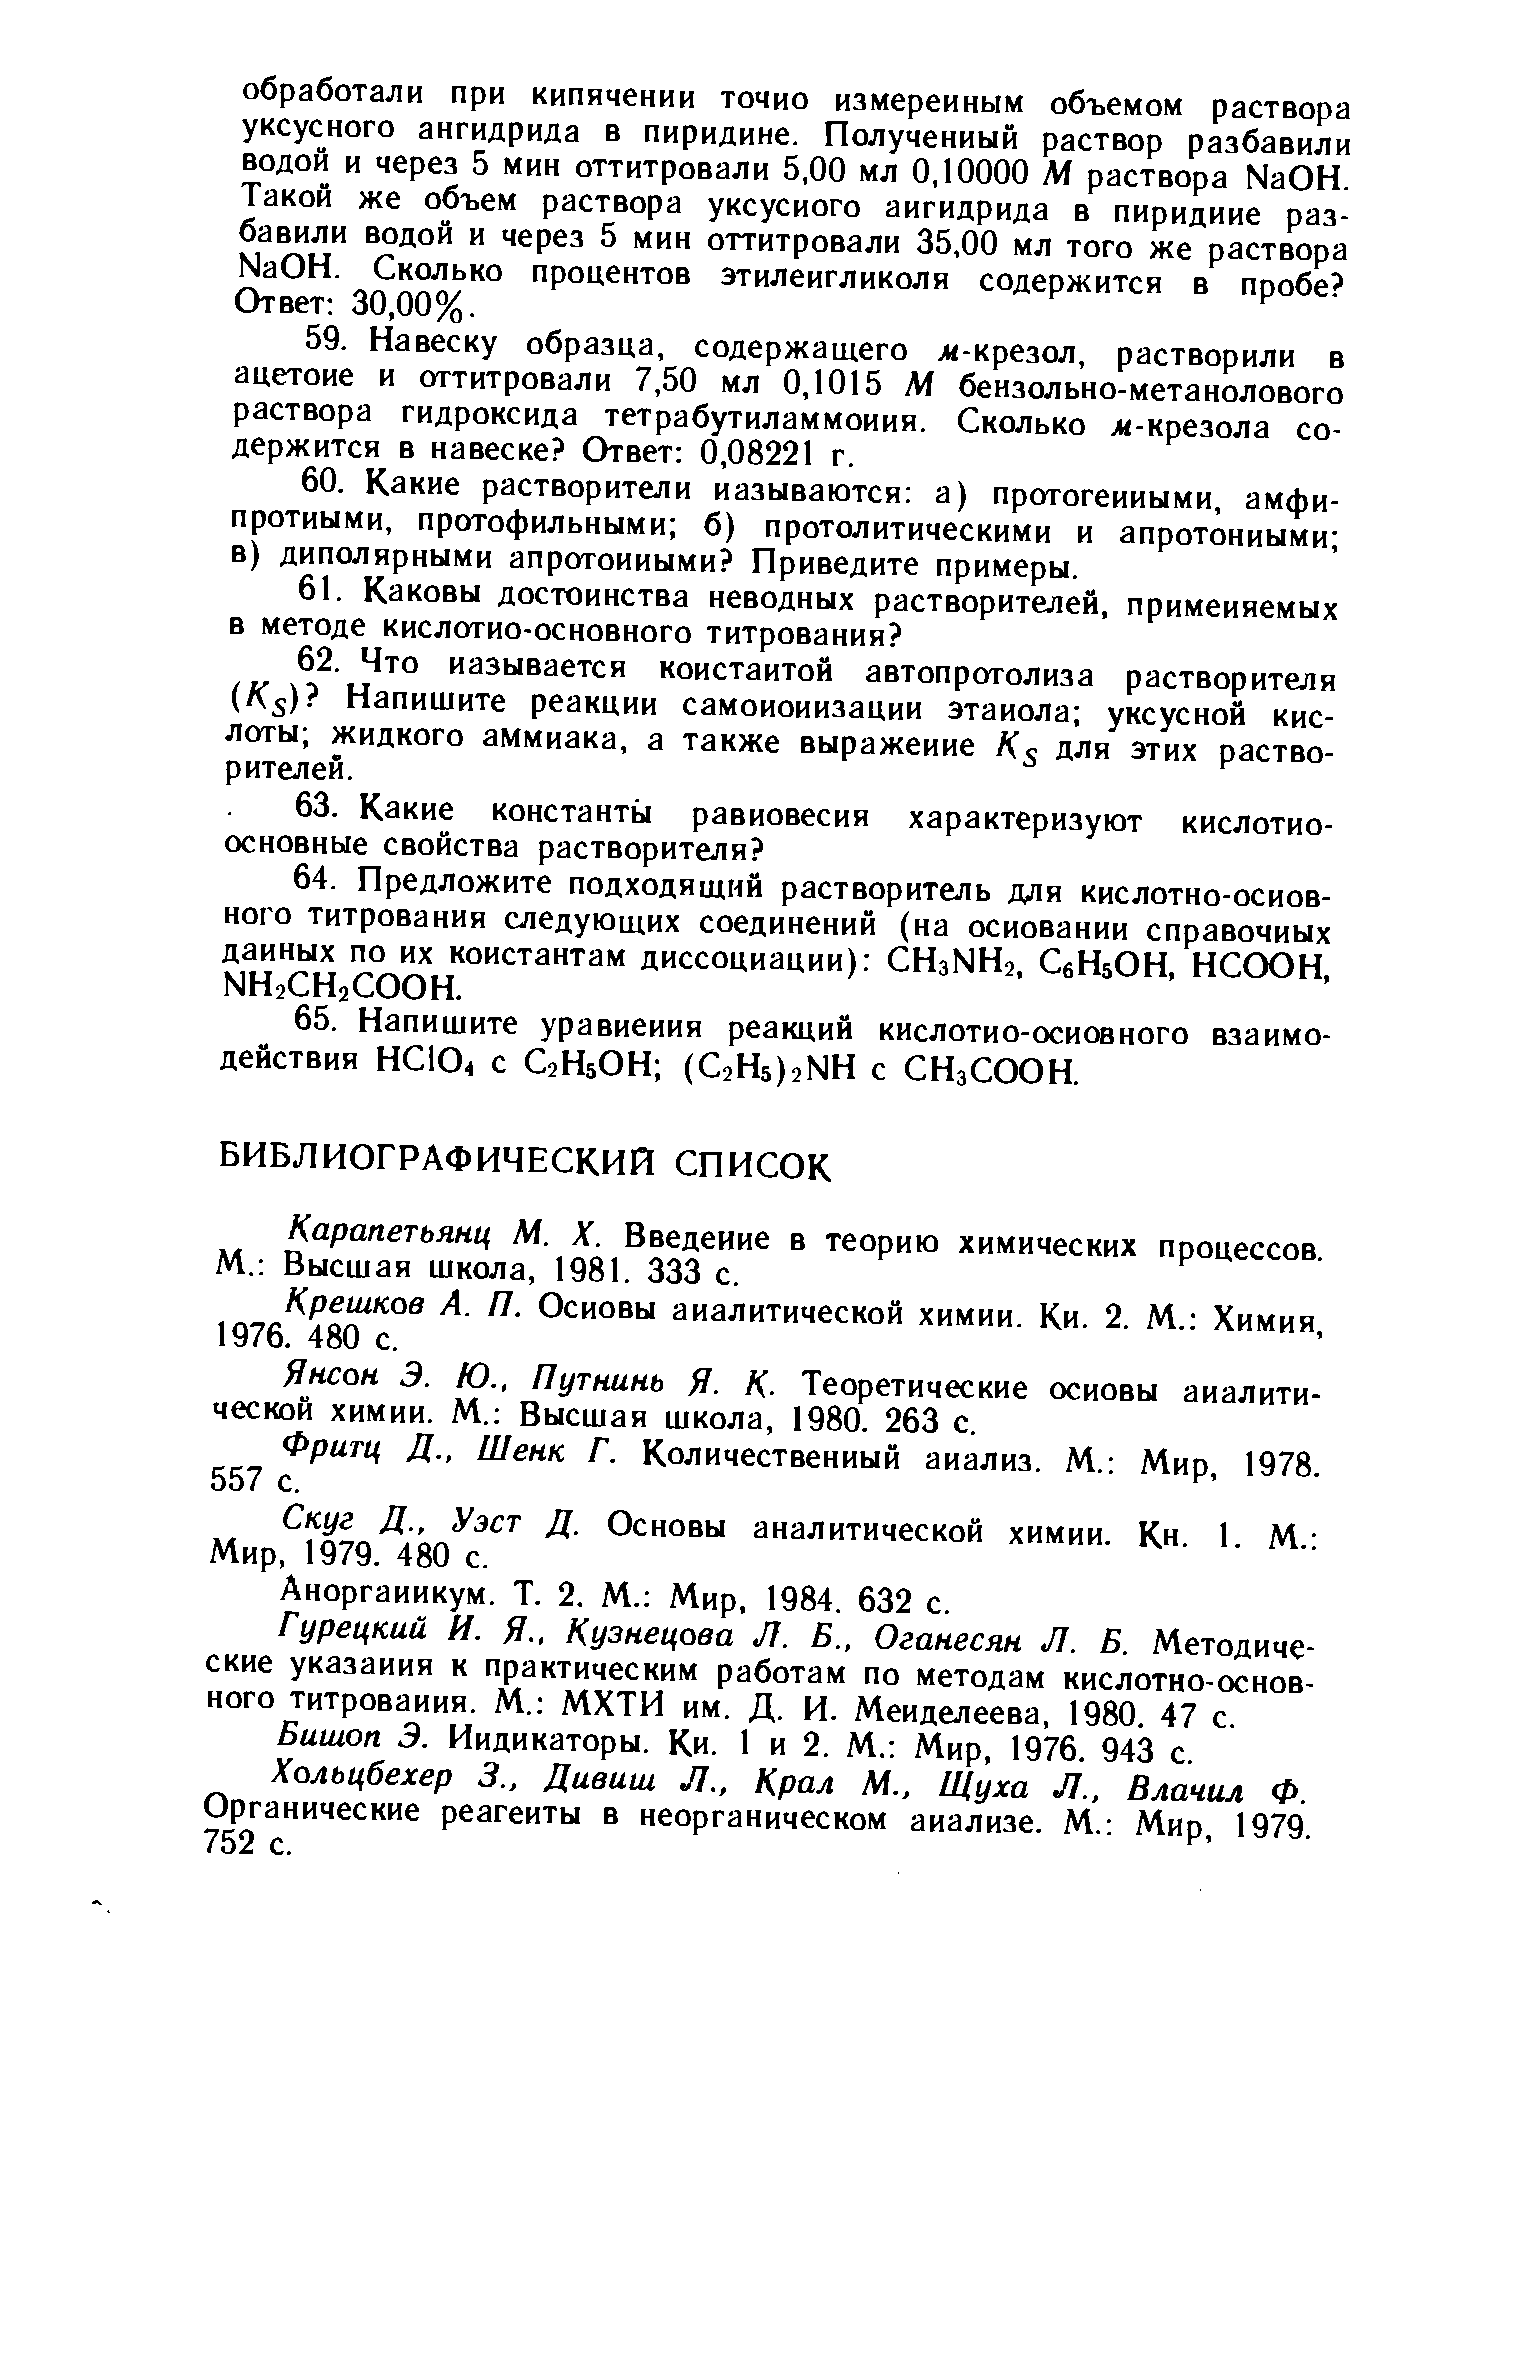 Карапетьянц М. X. Введение в теорию химических процессов. М. Высшая школа, 1981. 333 с.